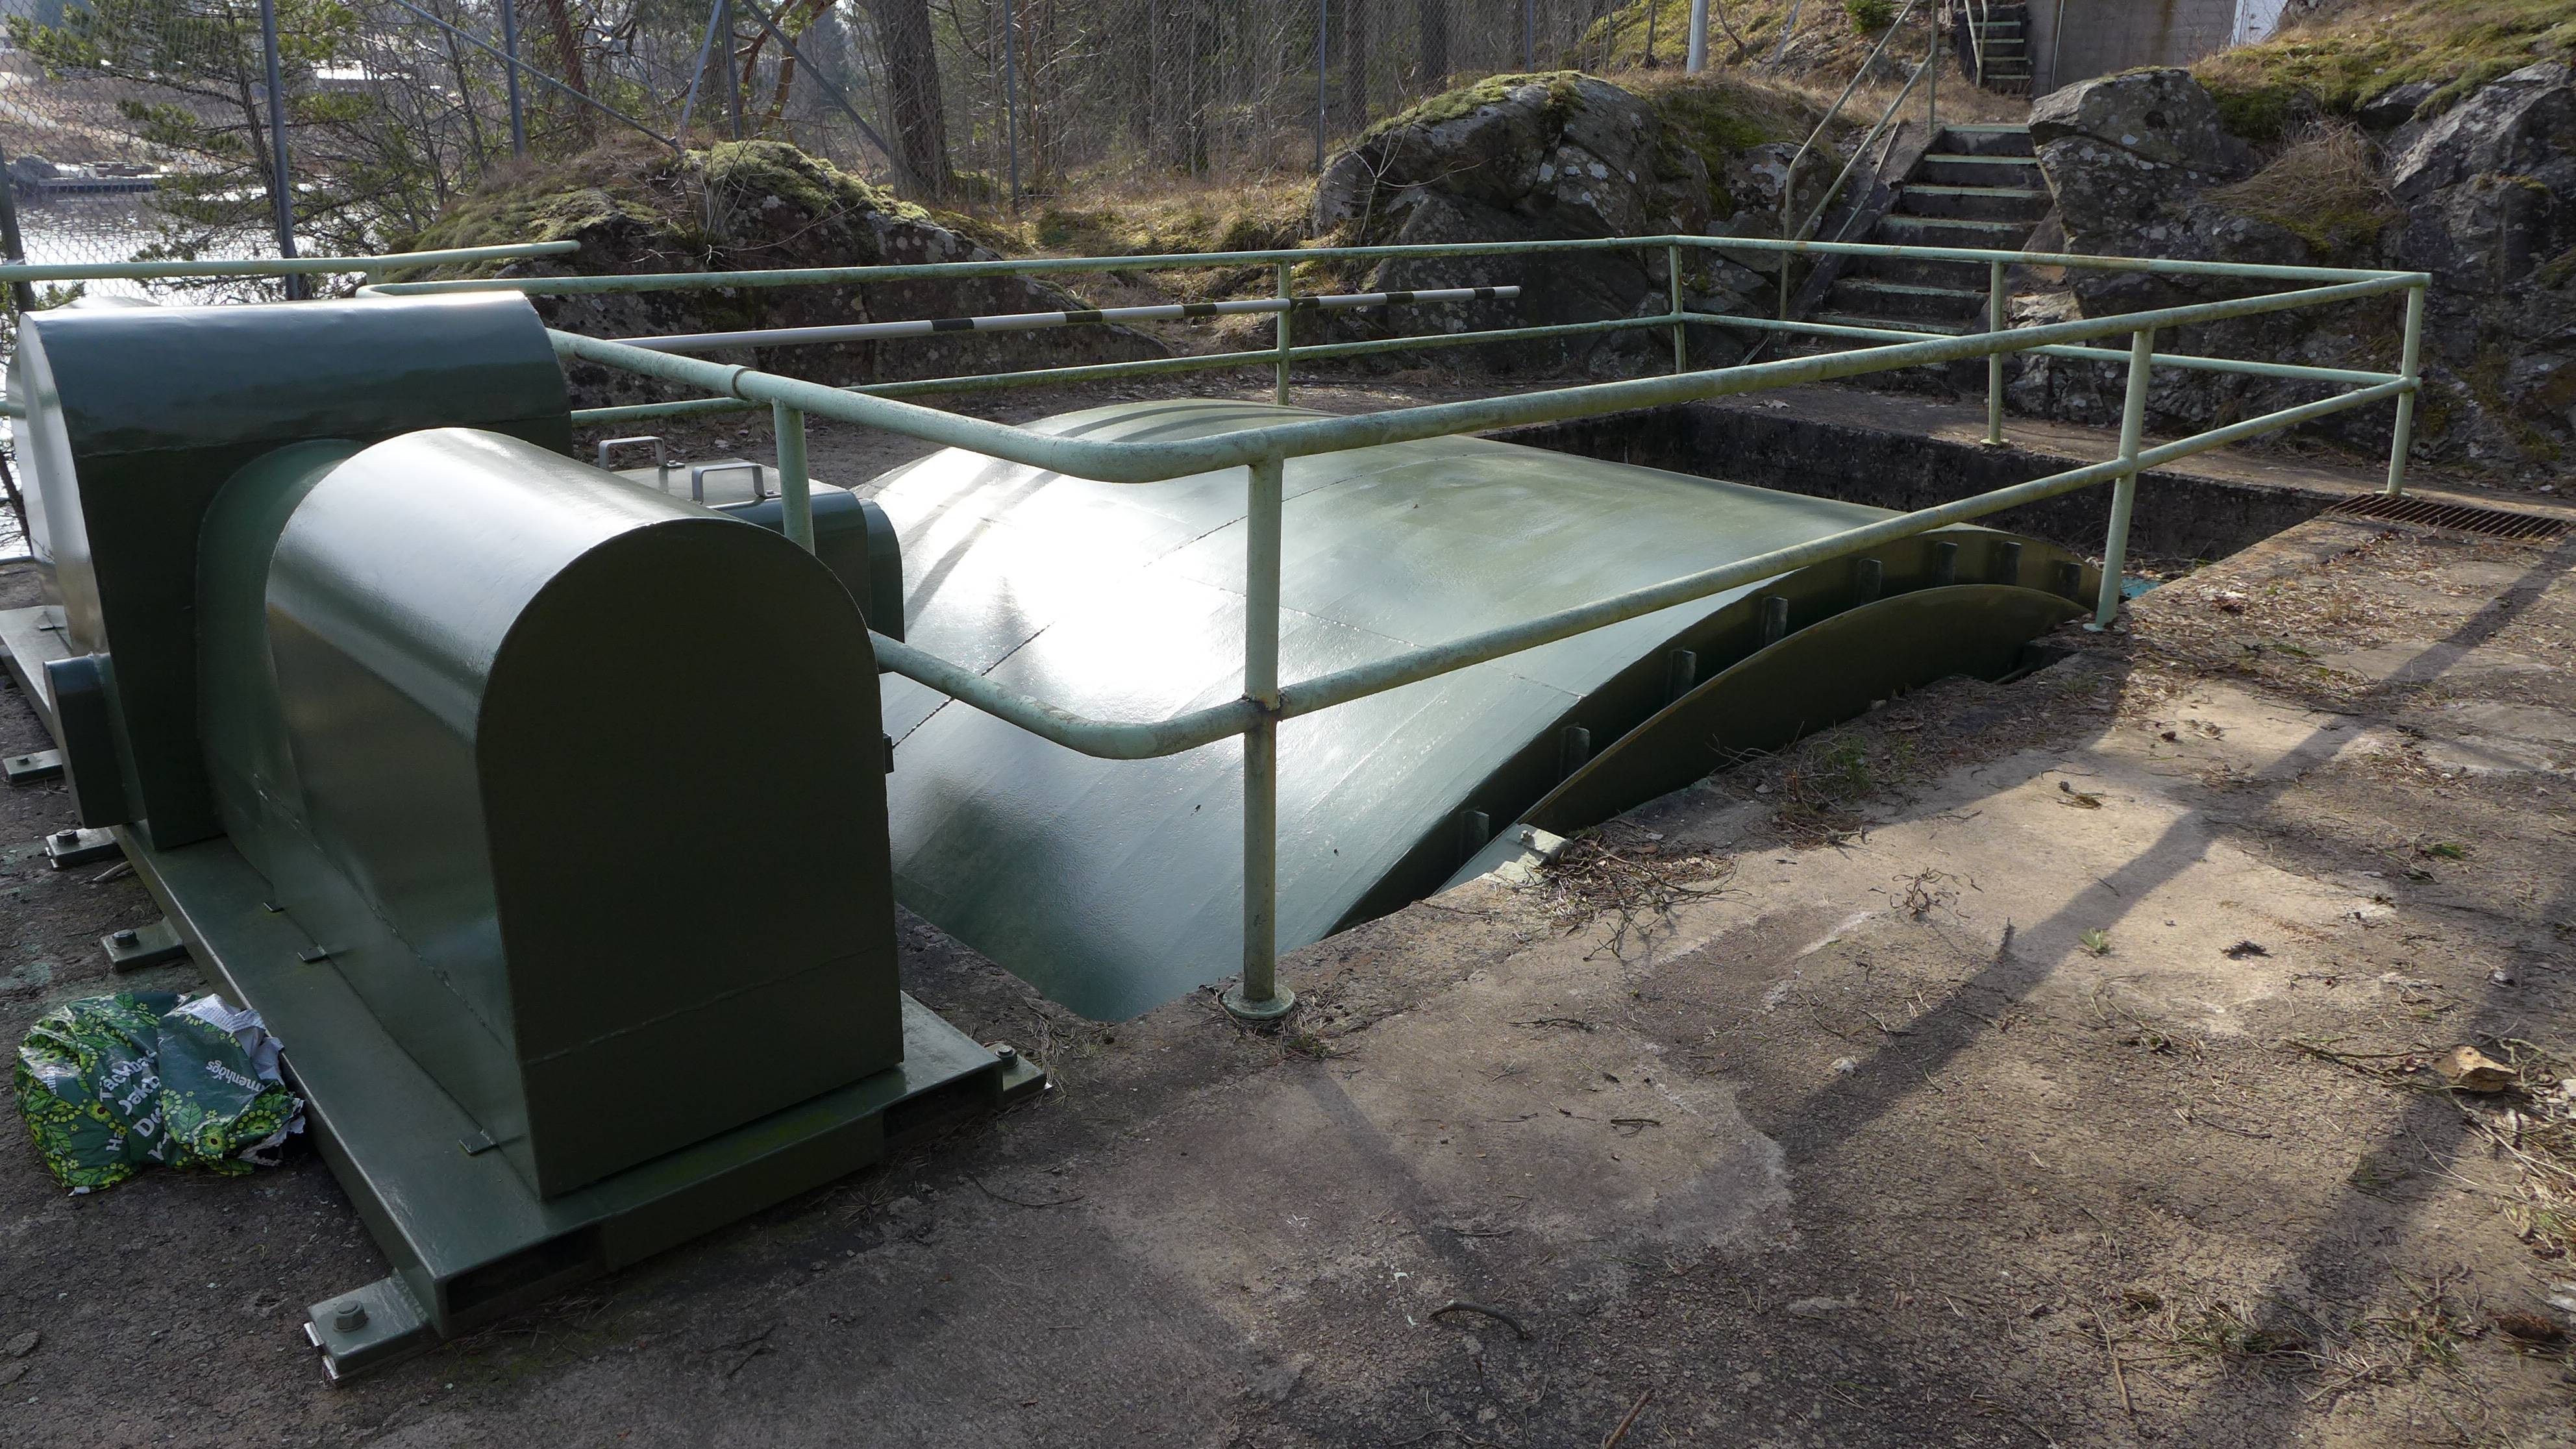 Intaget till Torska kraftverk sker direkt från sjön Ömmern och har ingen dammkropp. Intagsbassängen är insprängd i berget och klädd med gjuten betong. Intagsluckan är en fjärrstyrd sektorlucka. Intagsgallret rensas manuellt. 